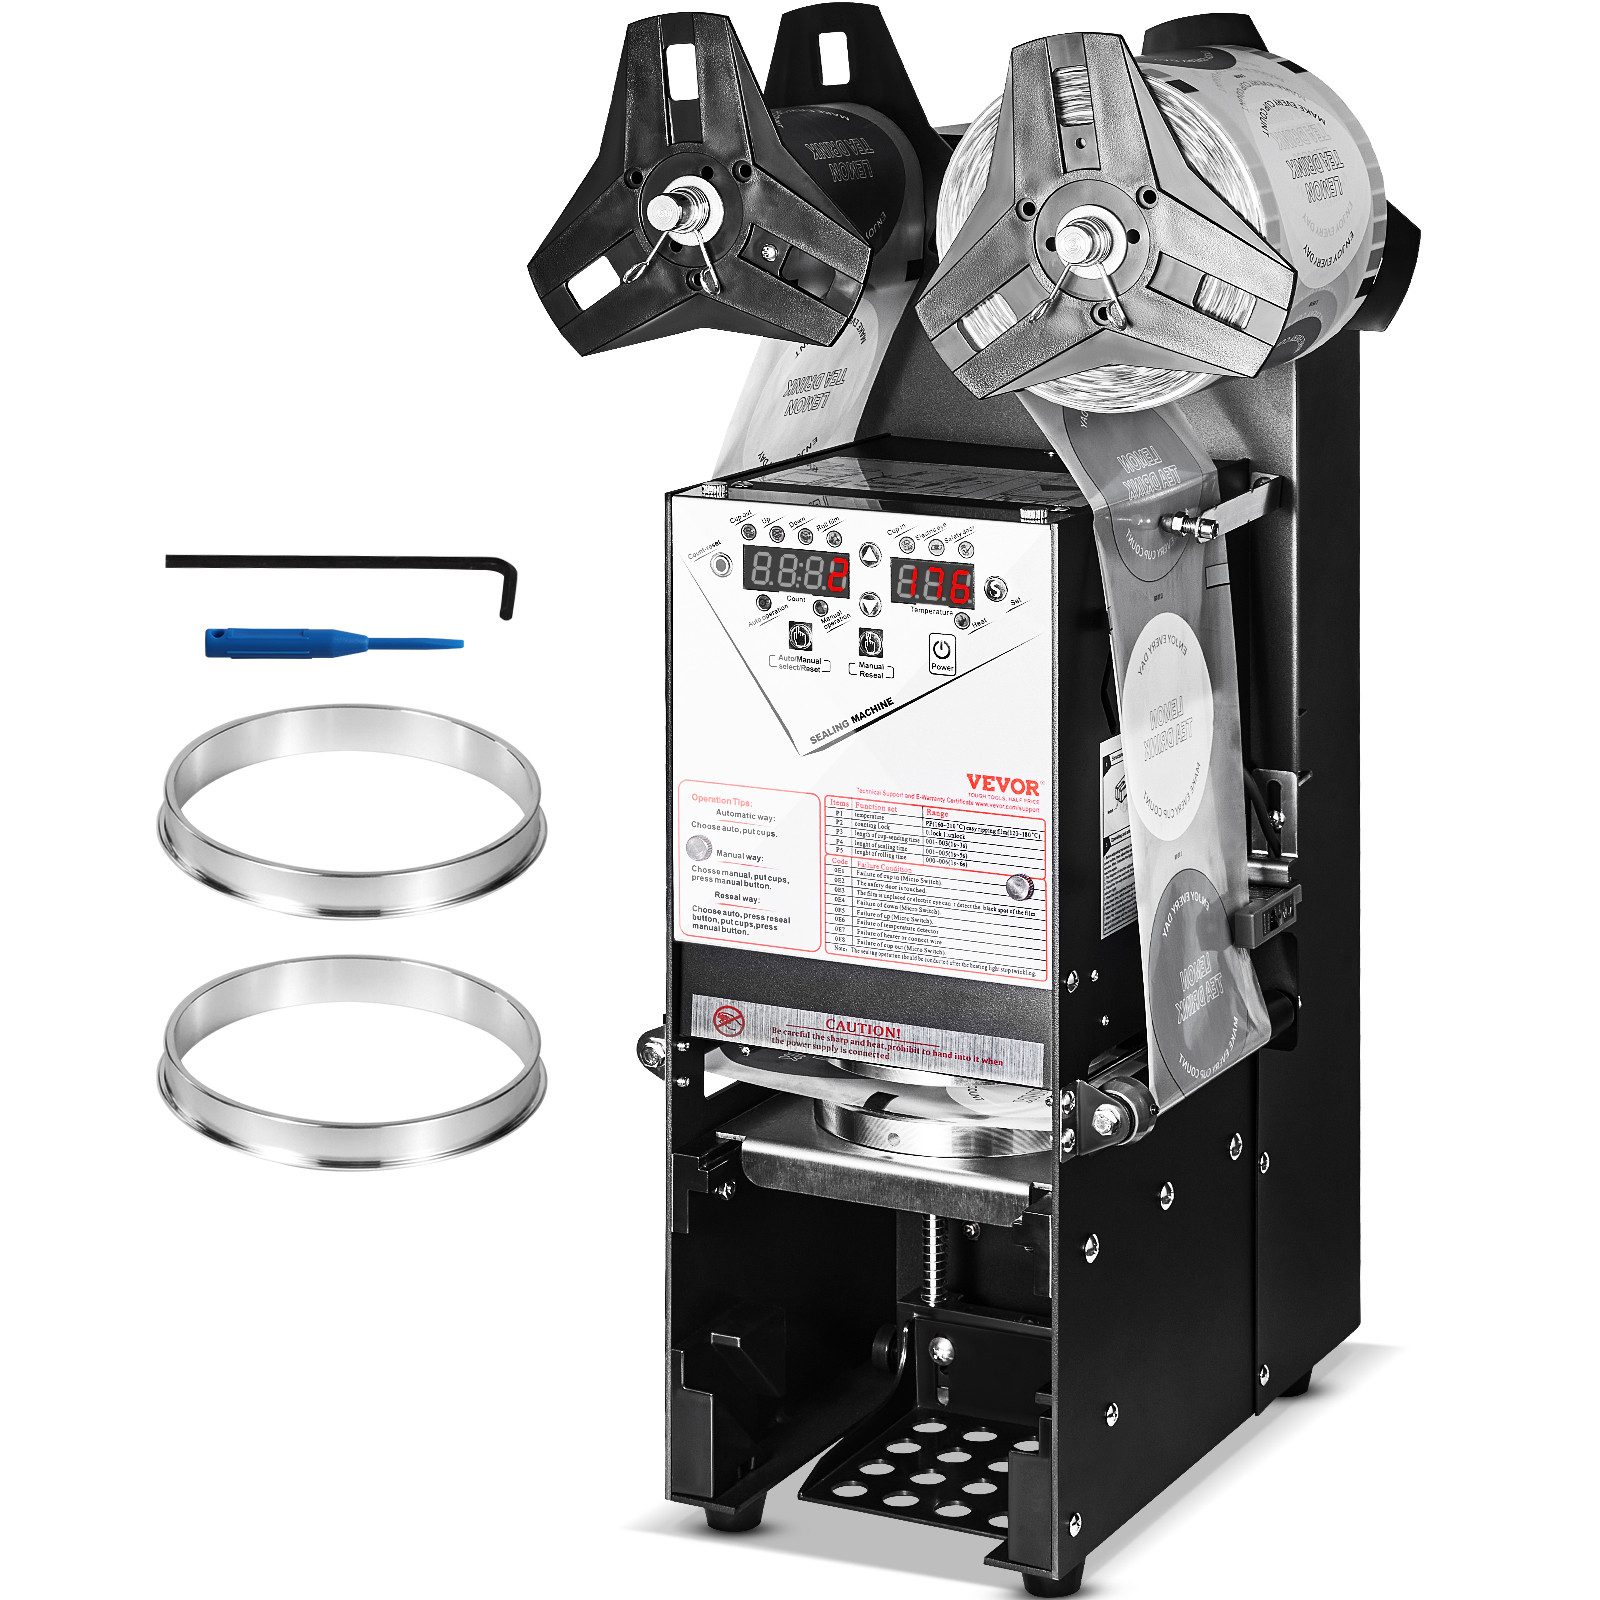 VEVOR Espressomaschine 500–650 Tassen/h, Juice Cup Sealer für 180 mm hohe und 90/95 mm große